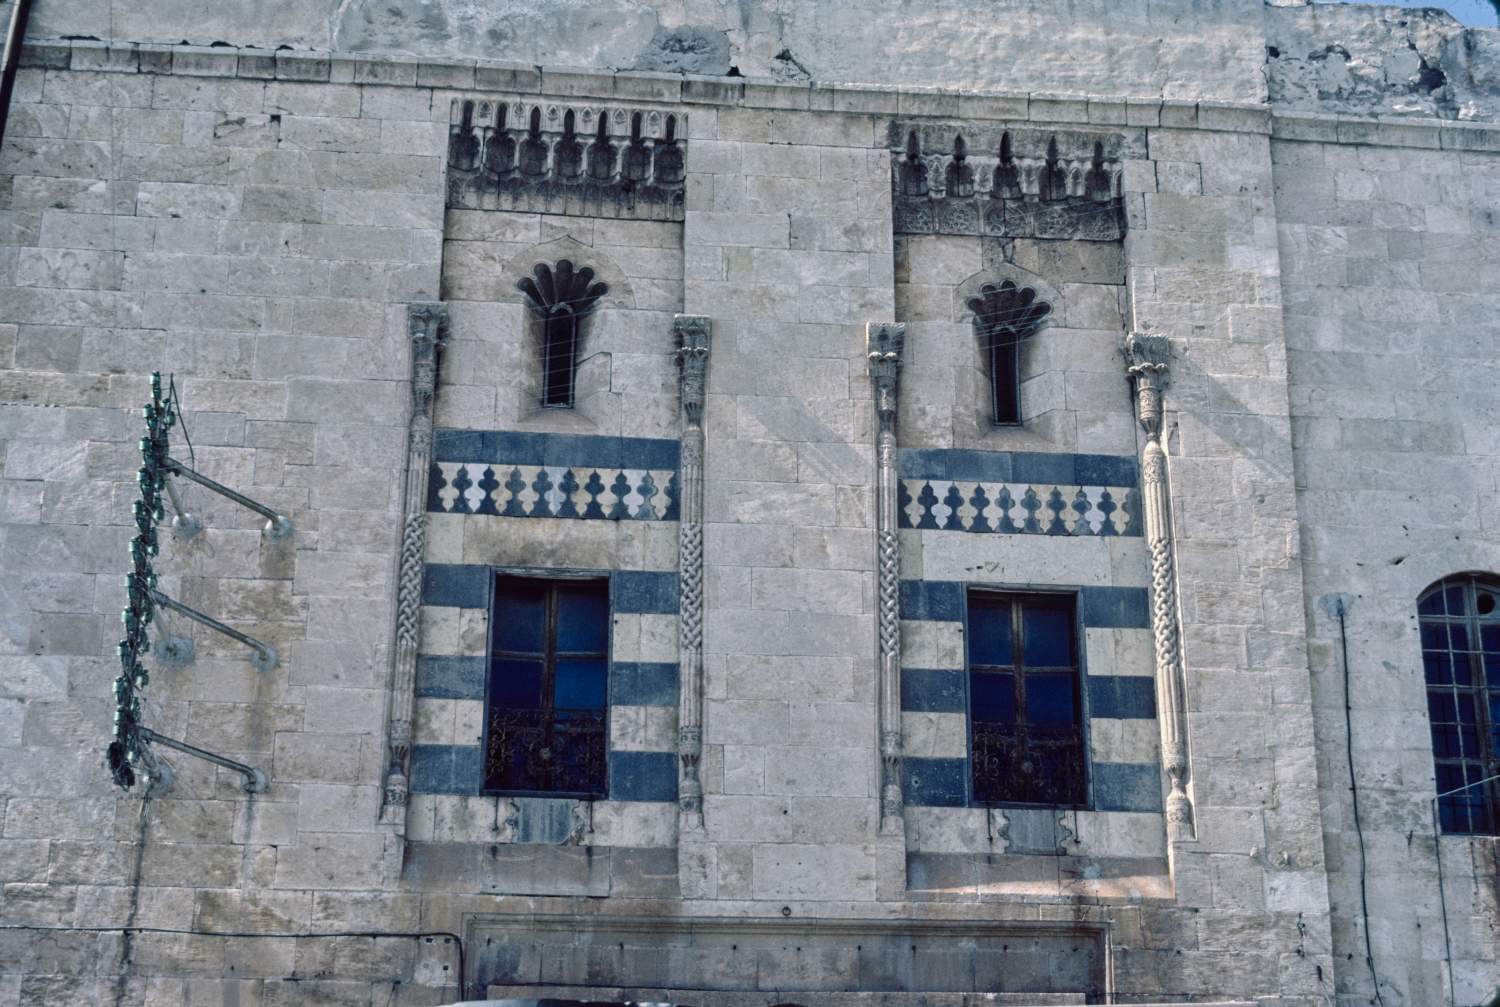 View of facade.